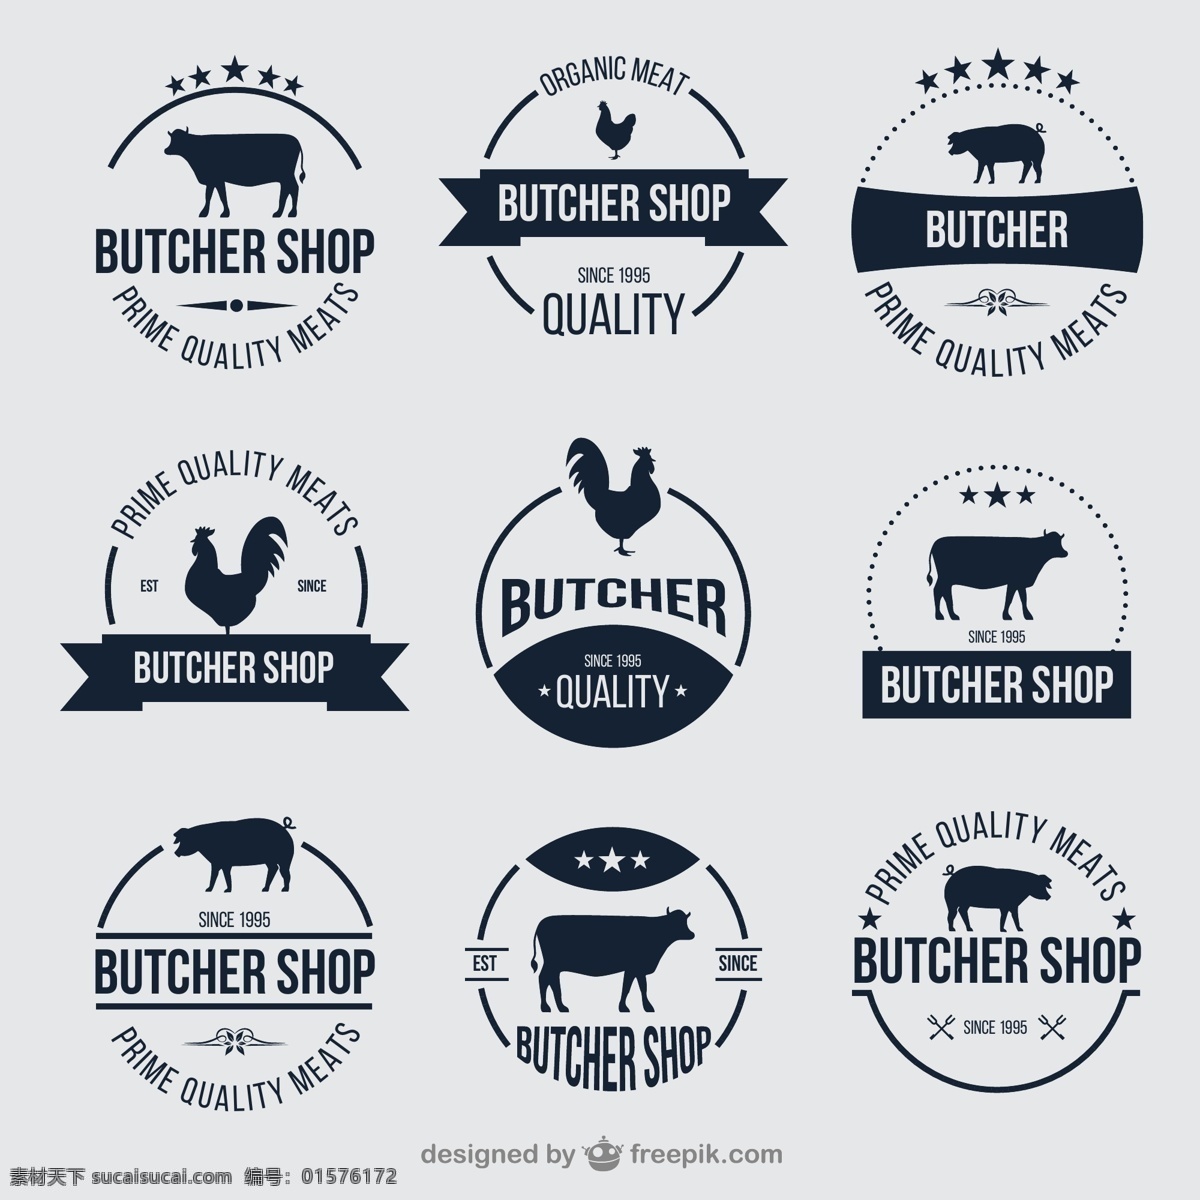 创意 肉店 圆形 标签 手绘插画 餐饮 牛 鸡 猪 肉铺 屠宰场 butcher shop 矢量素材 白色